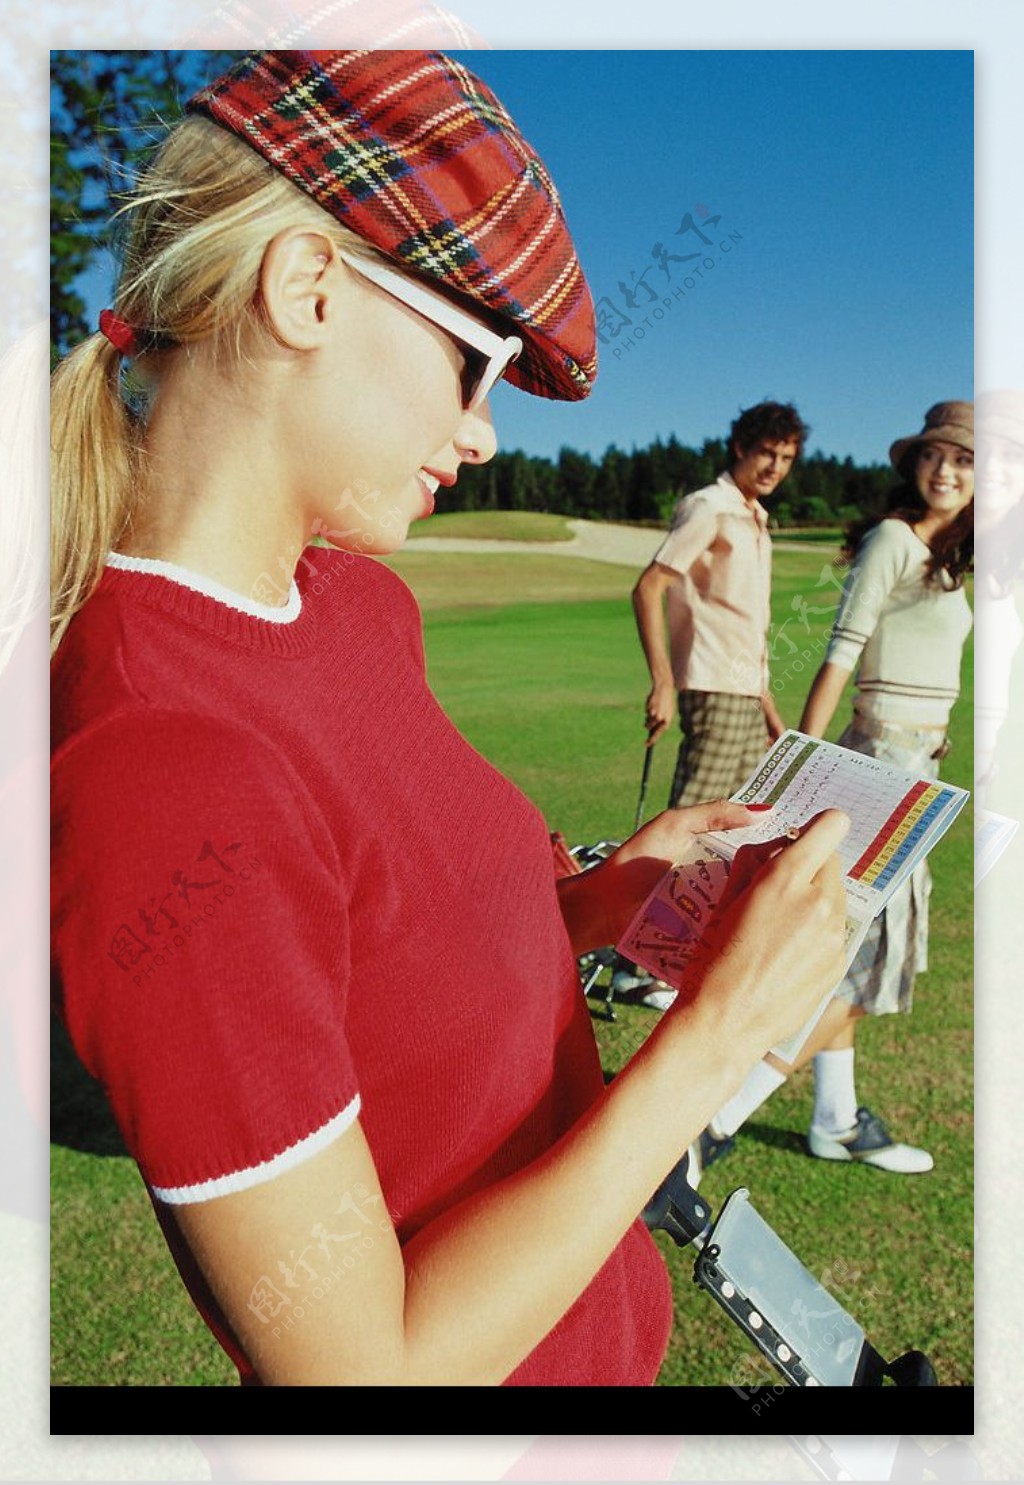 高尔夫球与人物图片